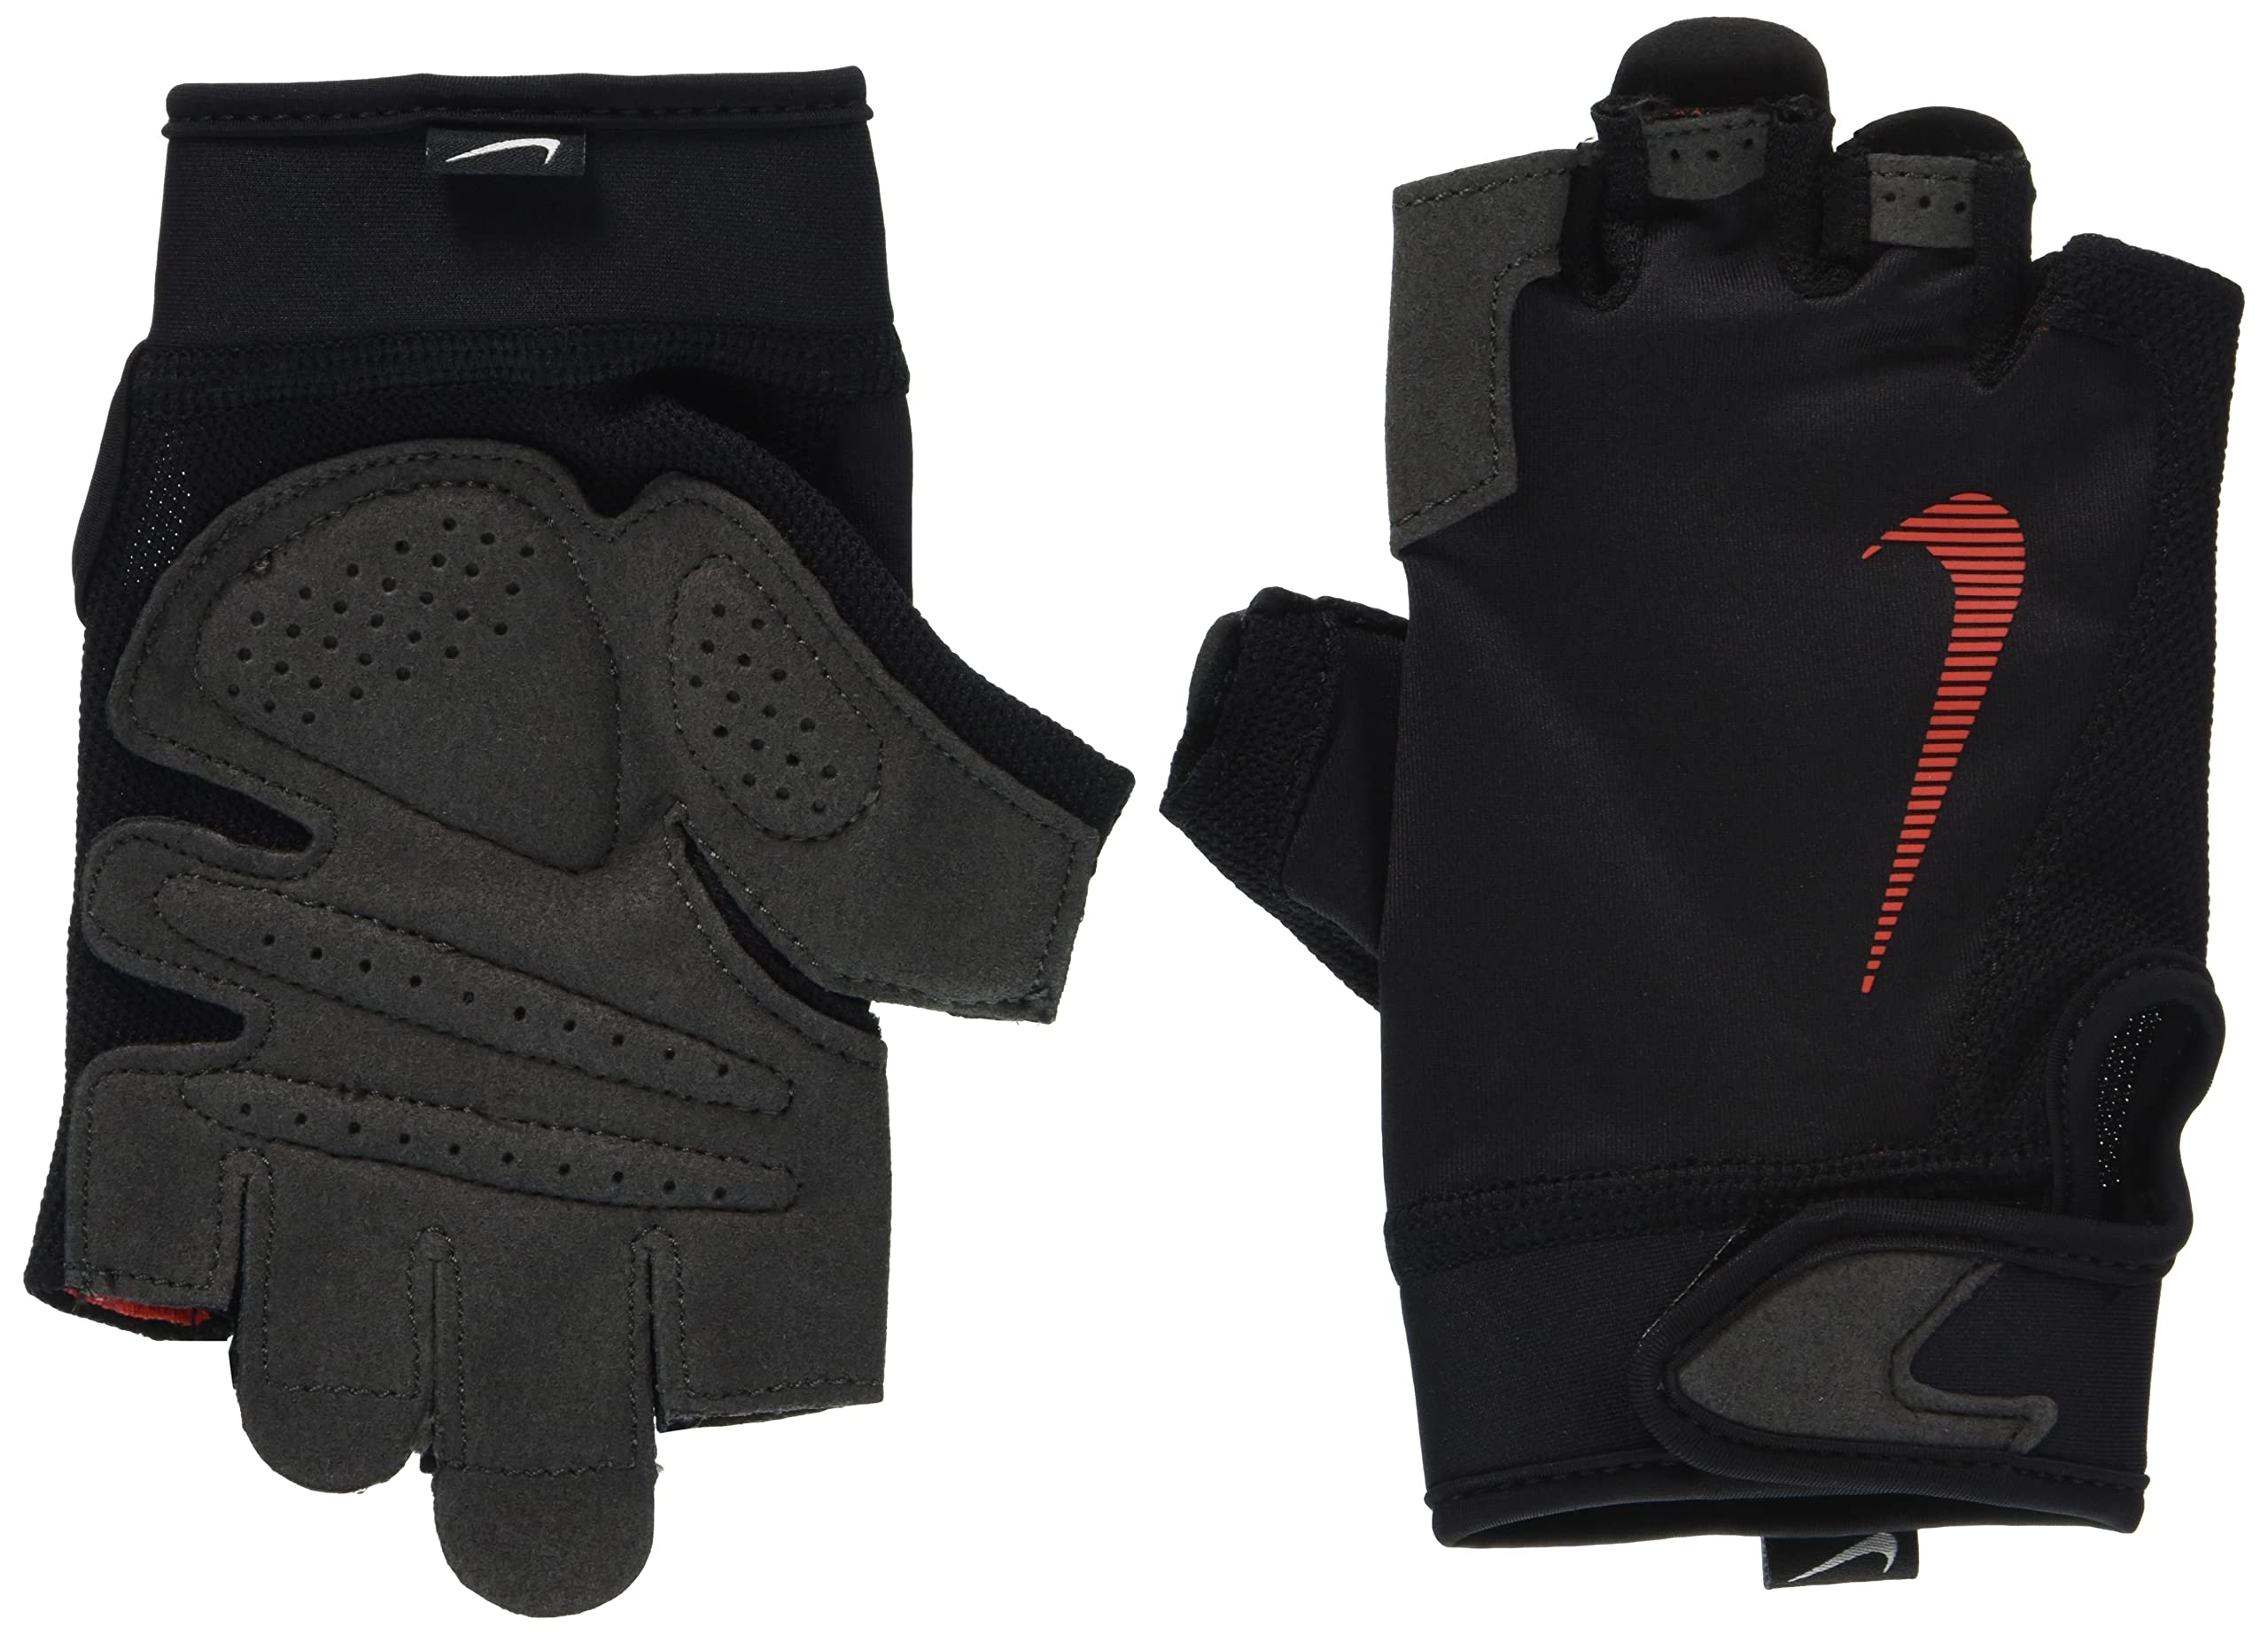 Nike Herren Men' s Ultimate Fitness Gloves Handschuhe, Black/lt Crimson/lt c, L